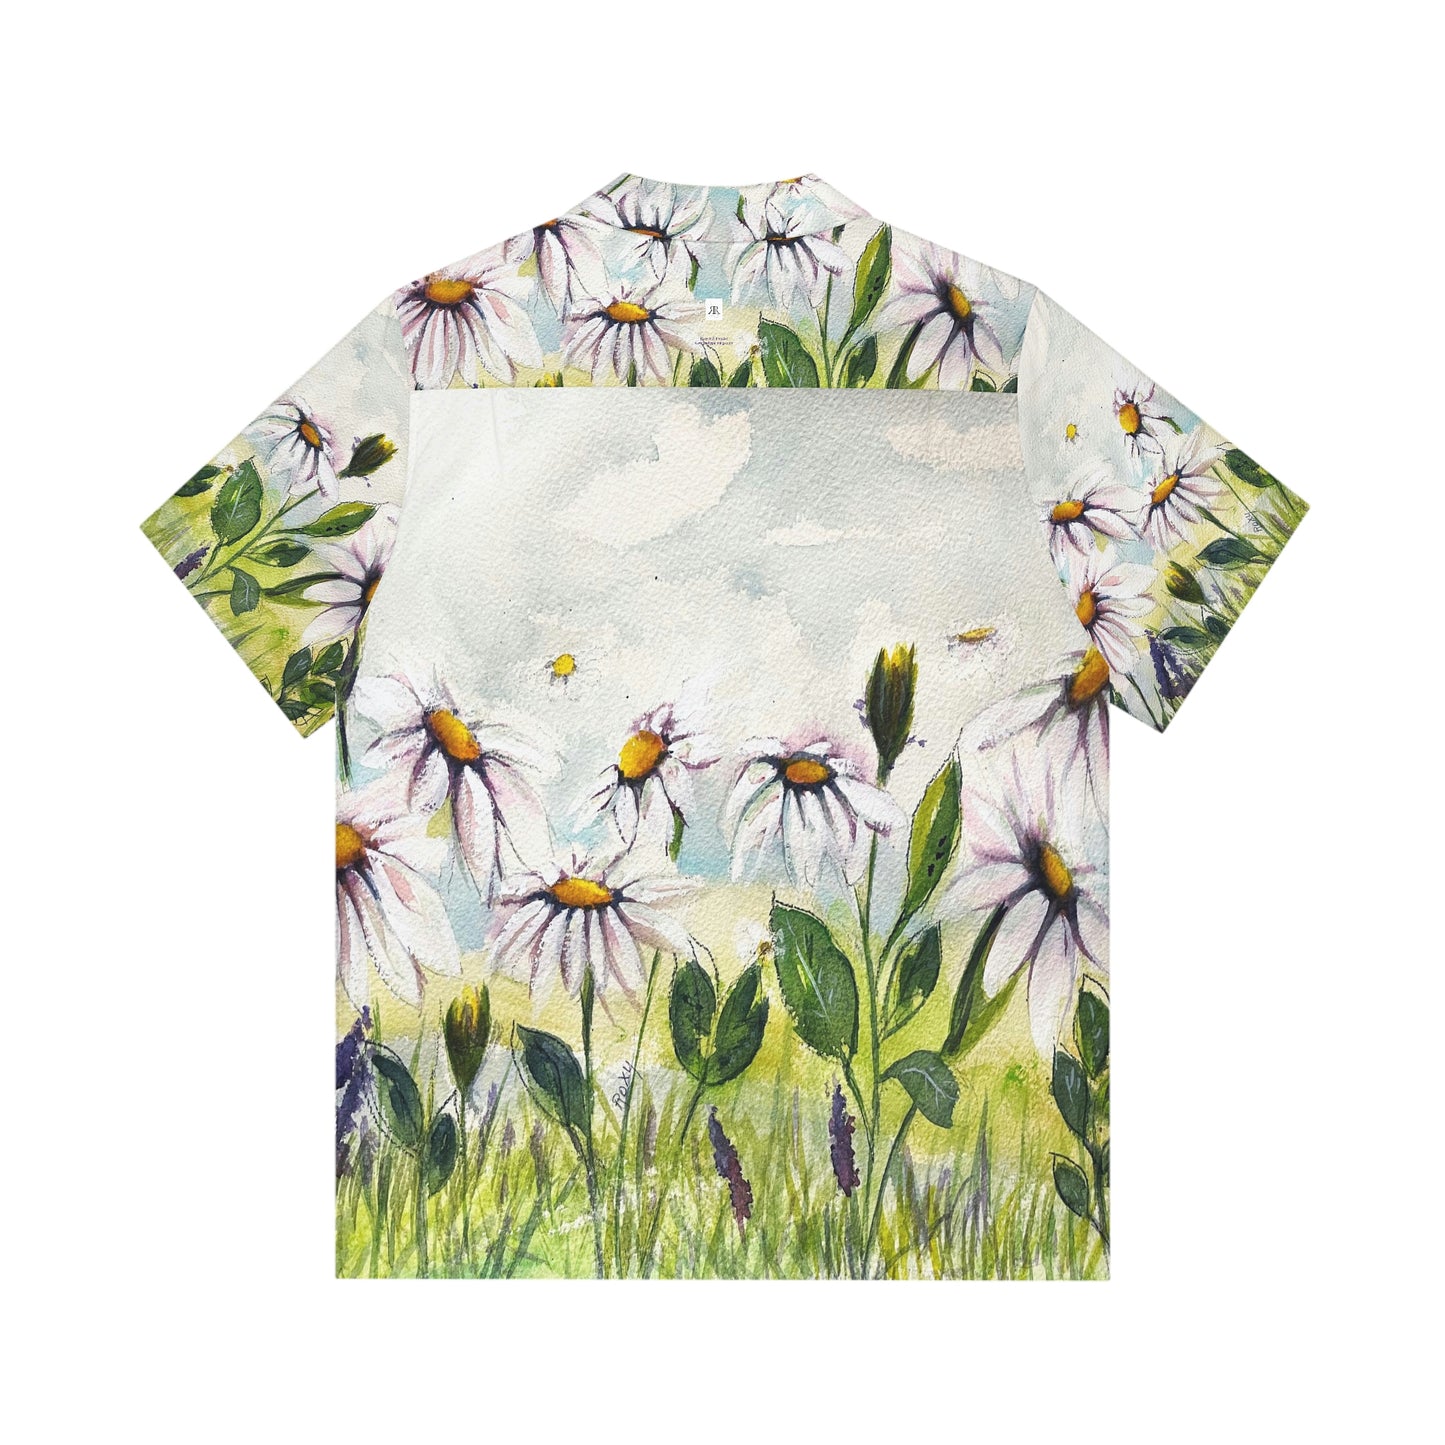 Daisy Meadow Original Loose Floral Watercolor Landscape Men's Hawaiian Shirt